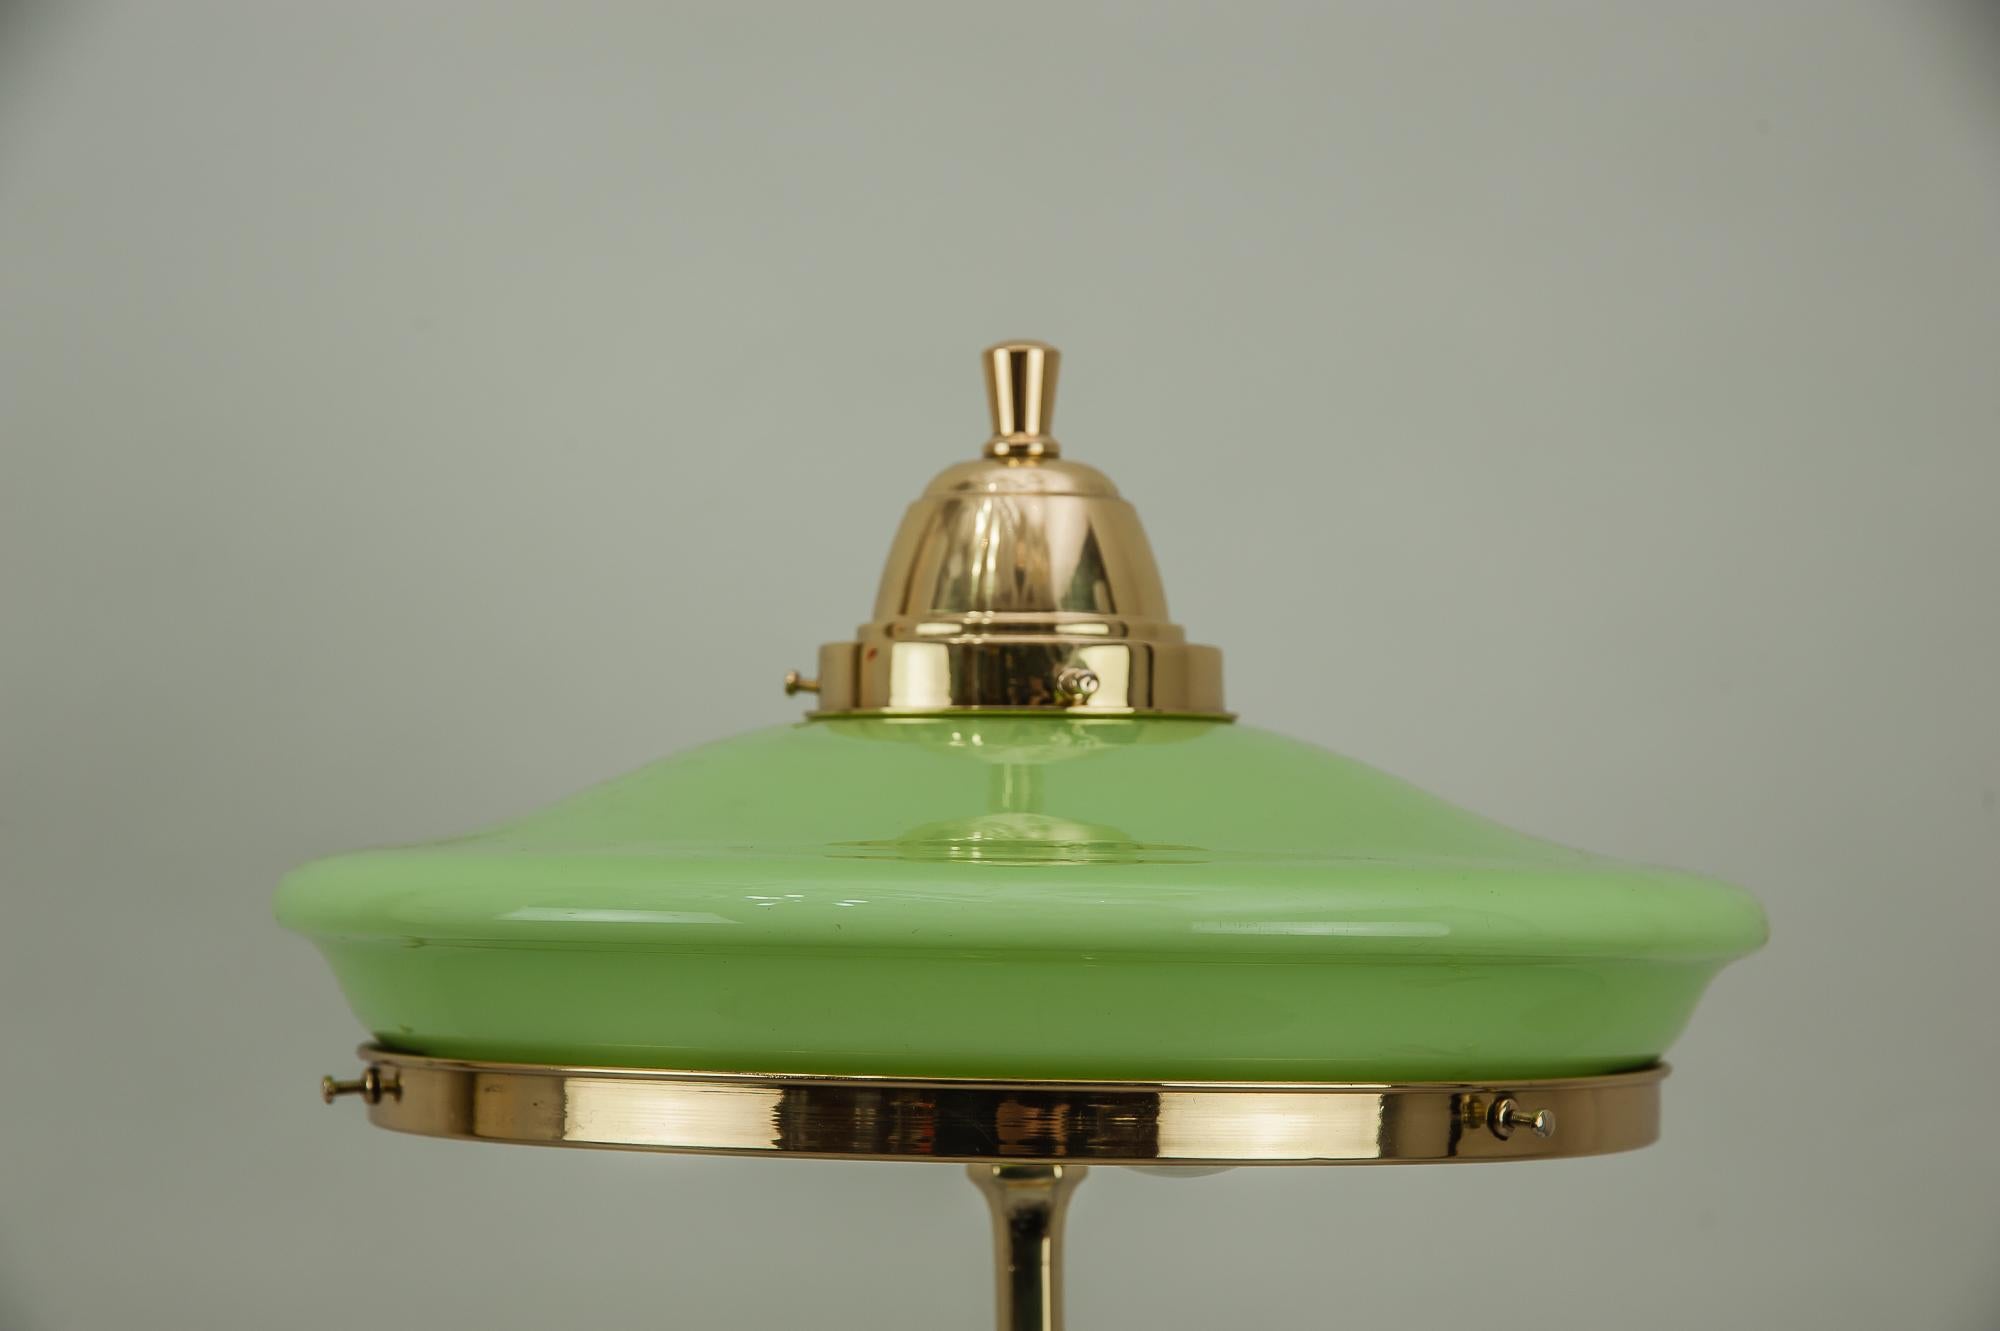 Jugendstil Table Lamp circa 1910s with Original Glass (Österreichisch)